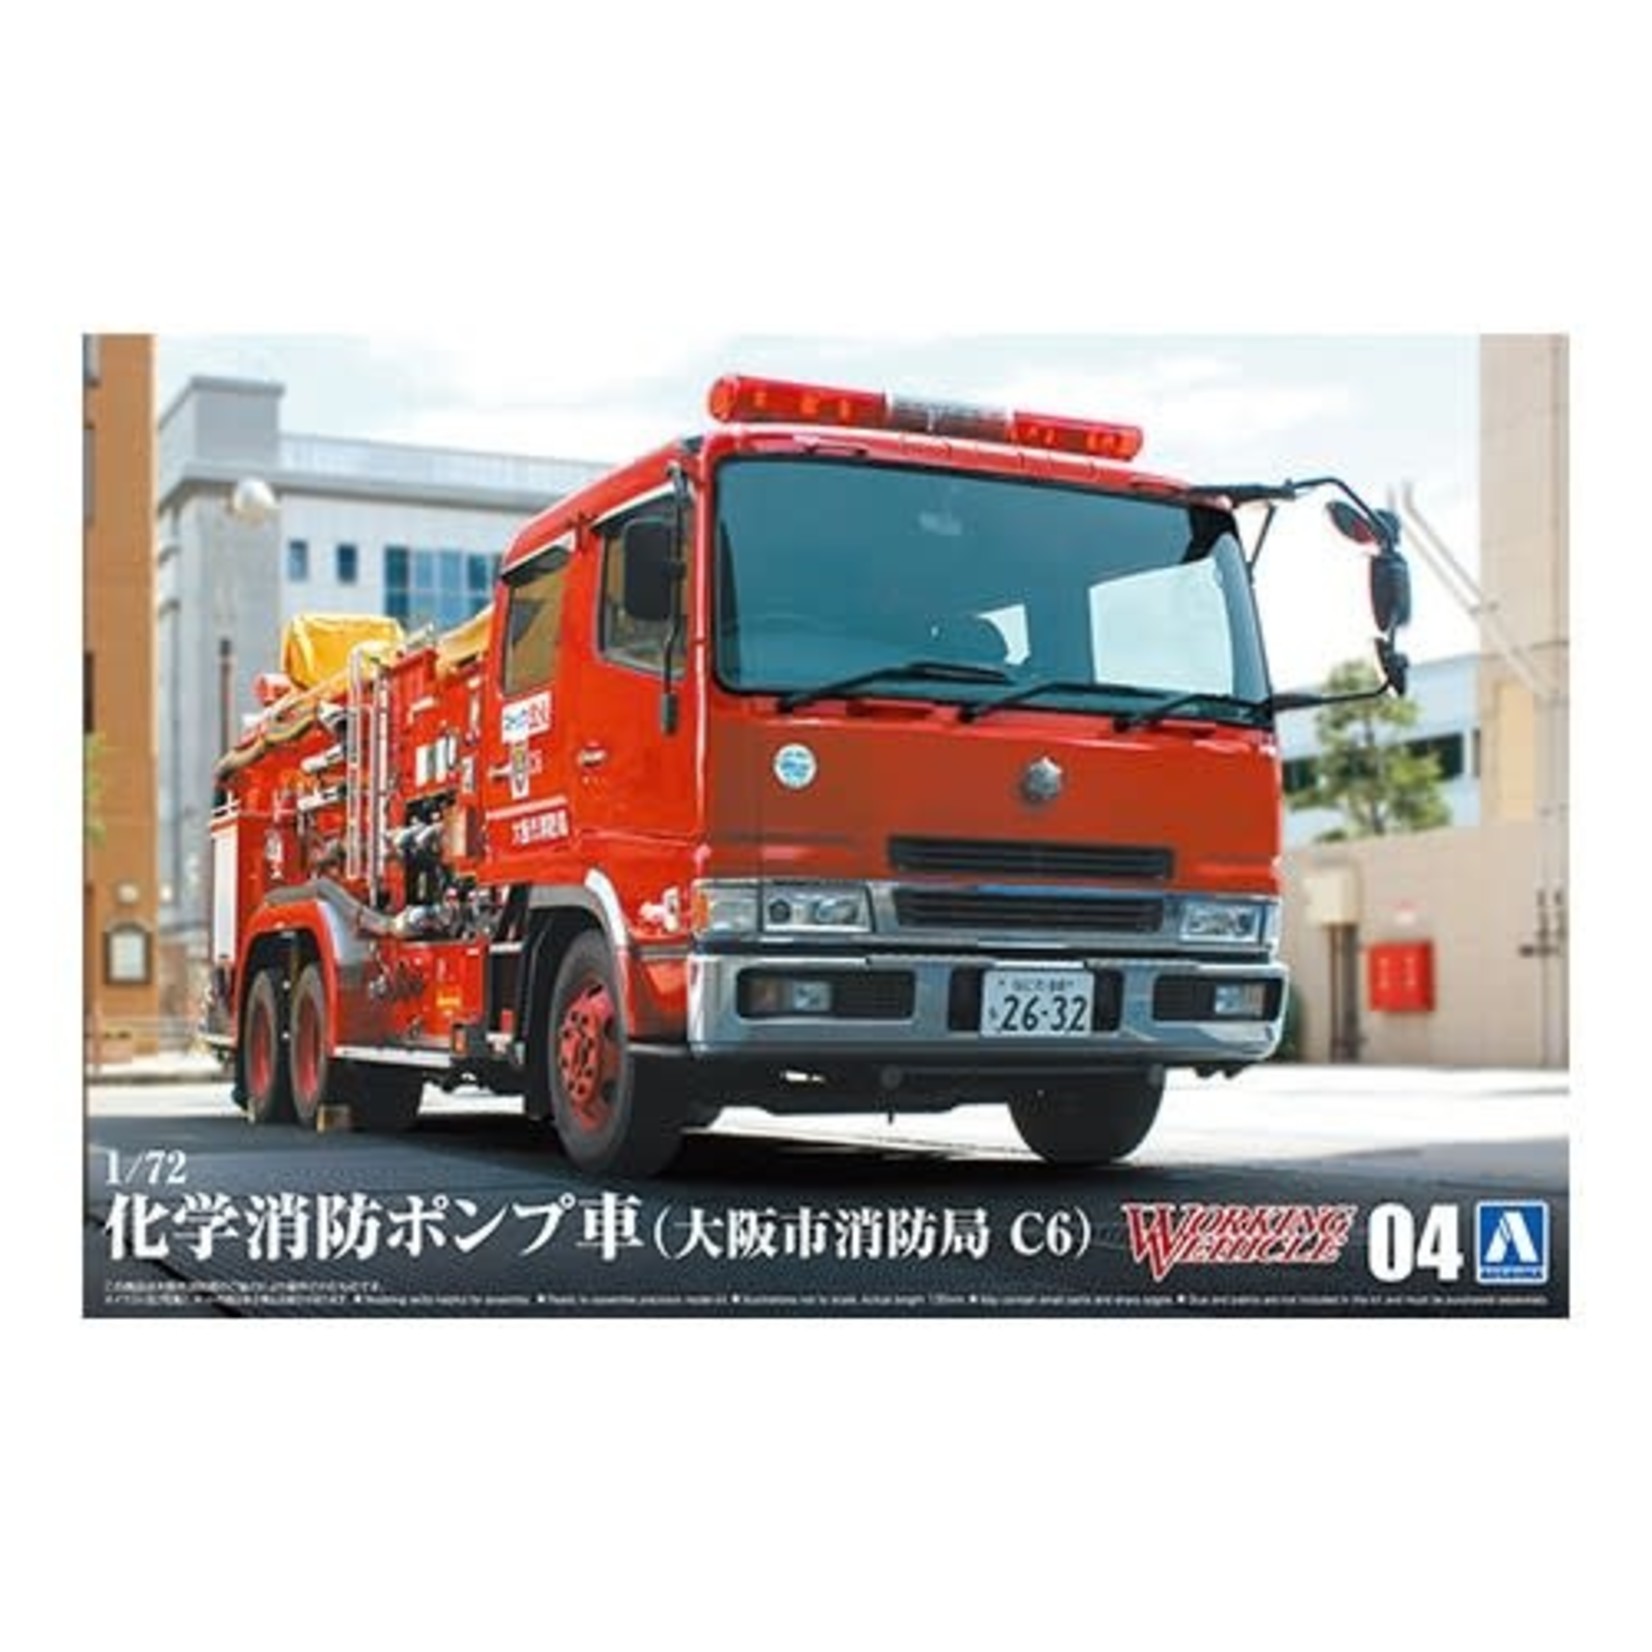 Aoshima AOS05971 Chemical Fire Pumper Truck Osaka Municipal FD (1/72)